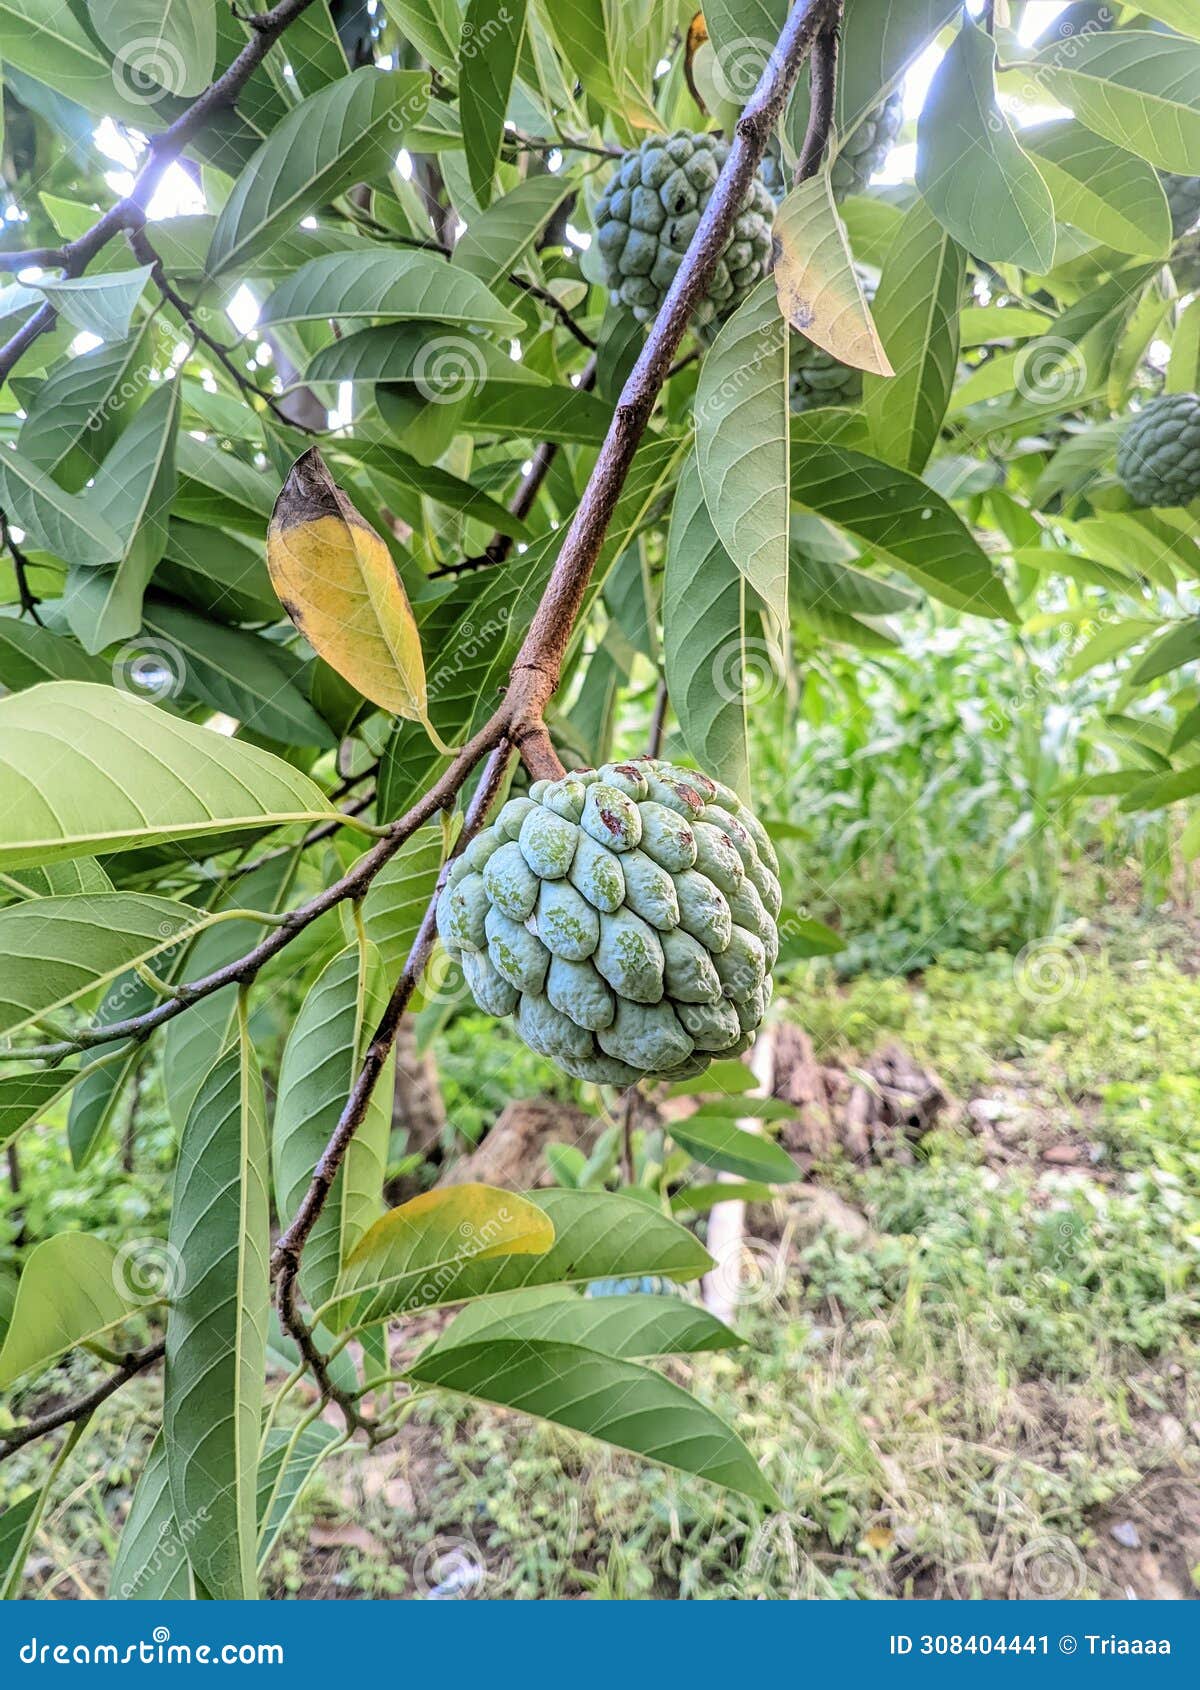 unripe srikaya fruit in the garden